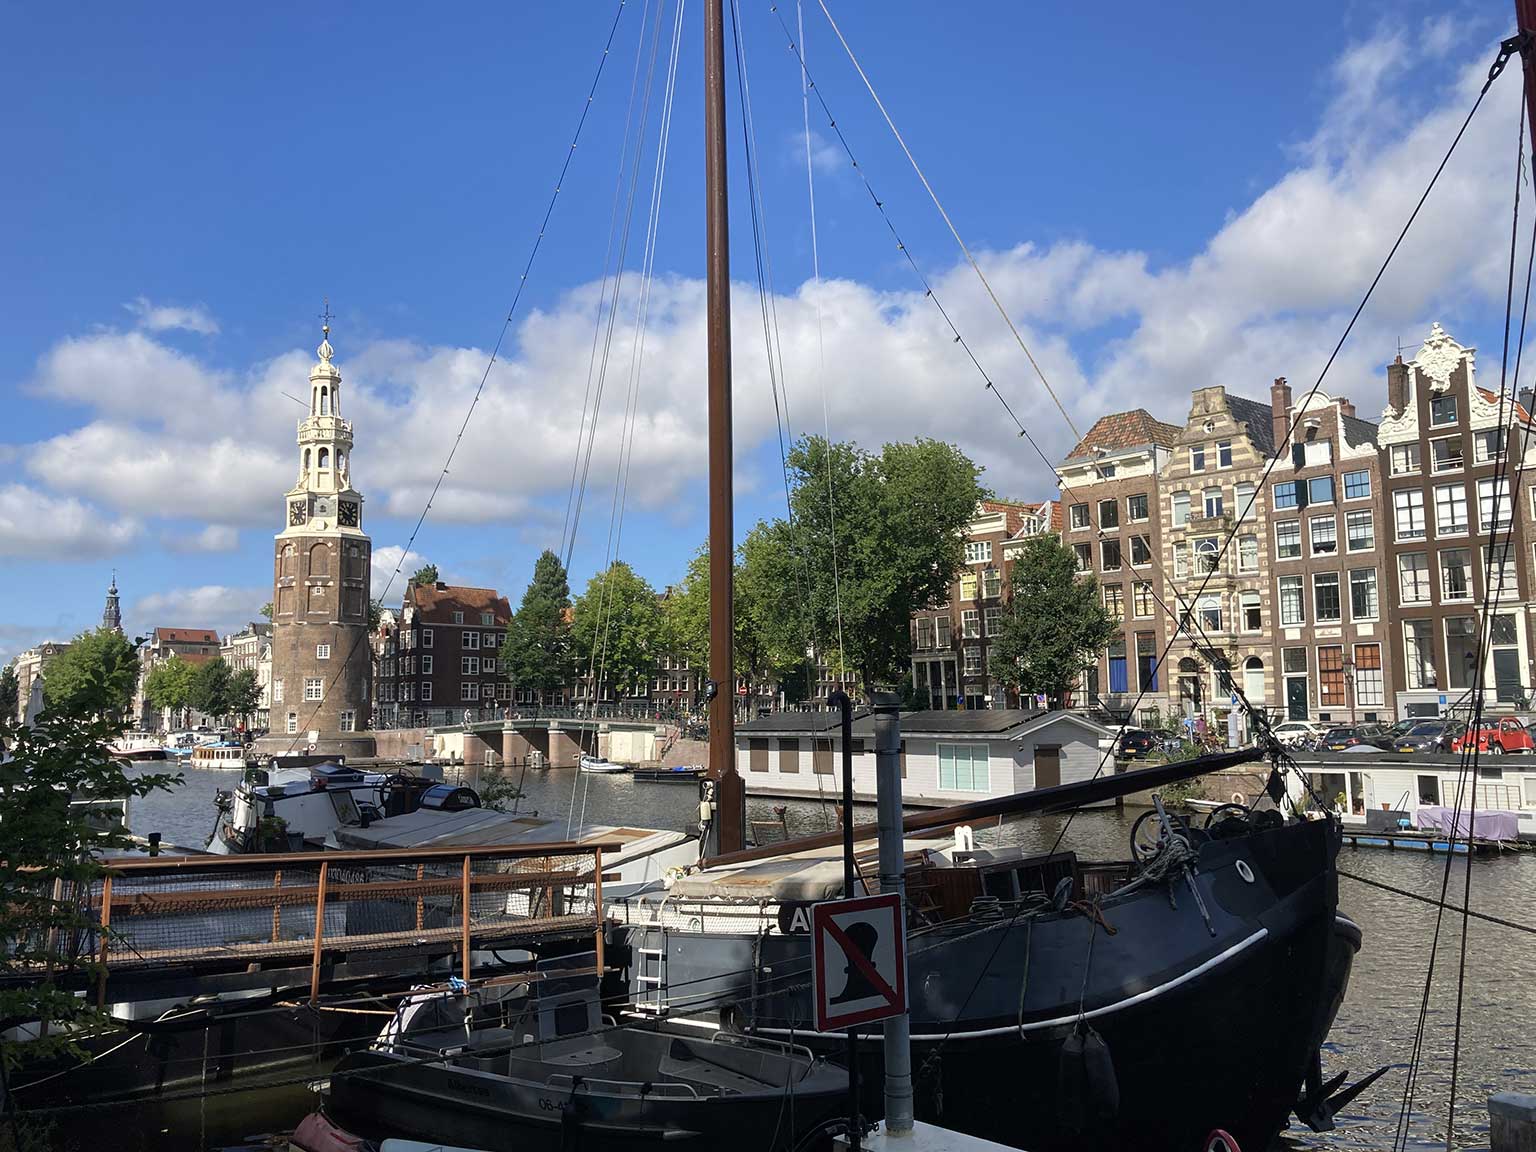 View from 's Gravenhekje on Montelbaanstoren, Montelbaansbrug and Kalkmarkt, Amsterdam